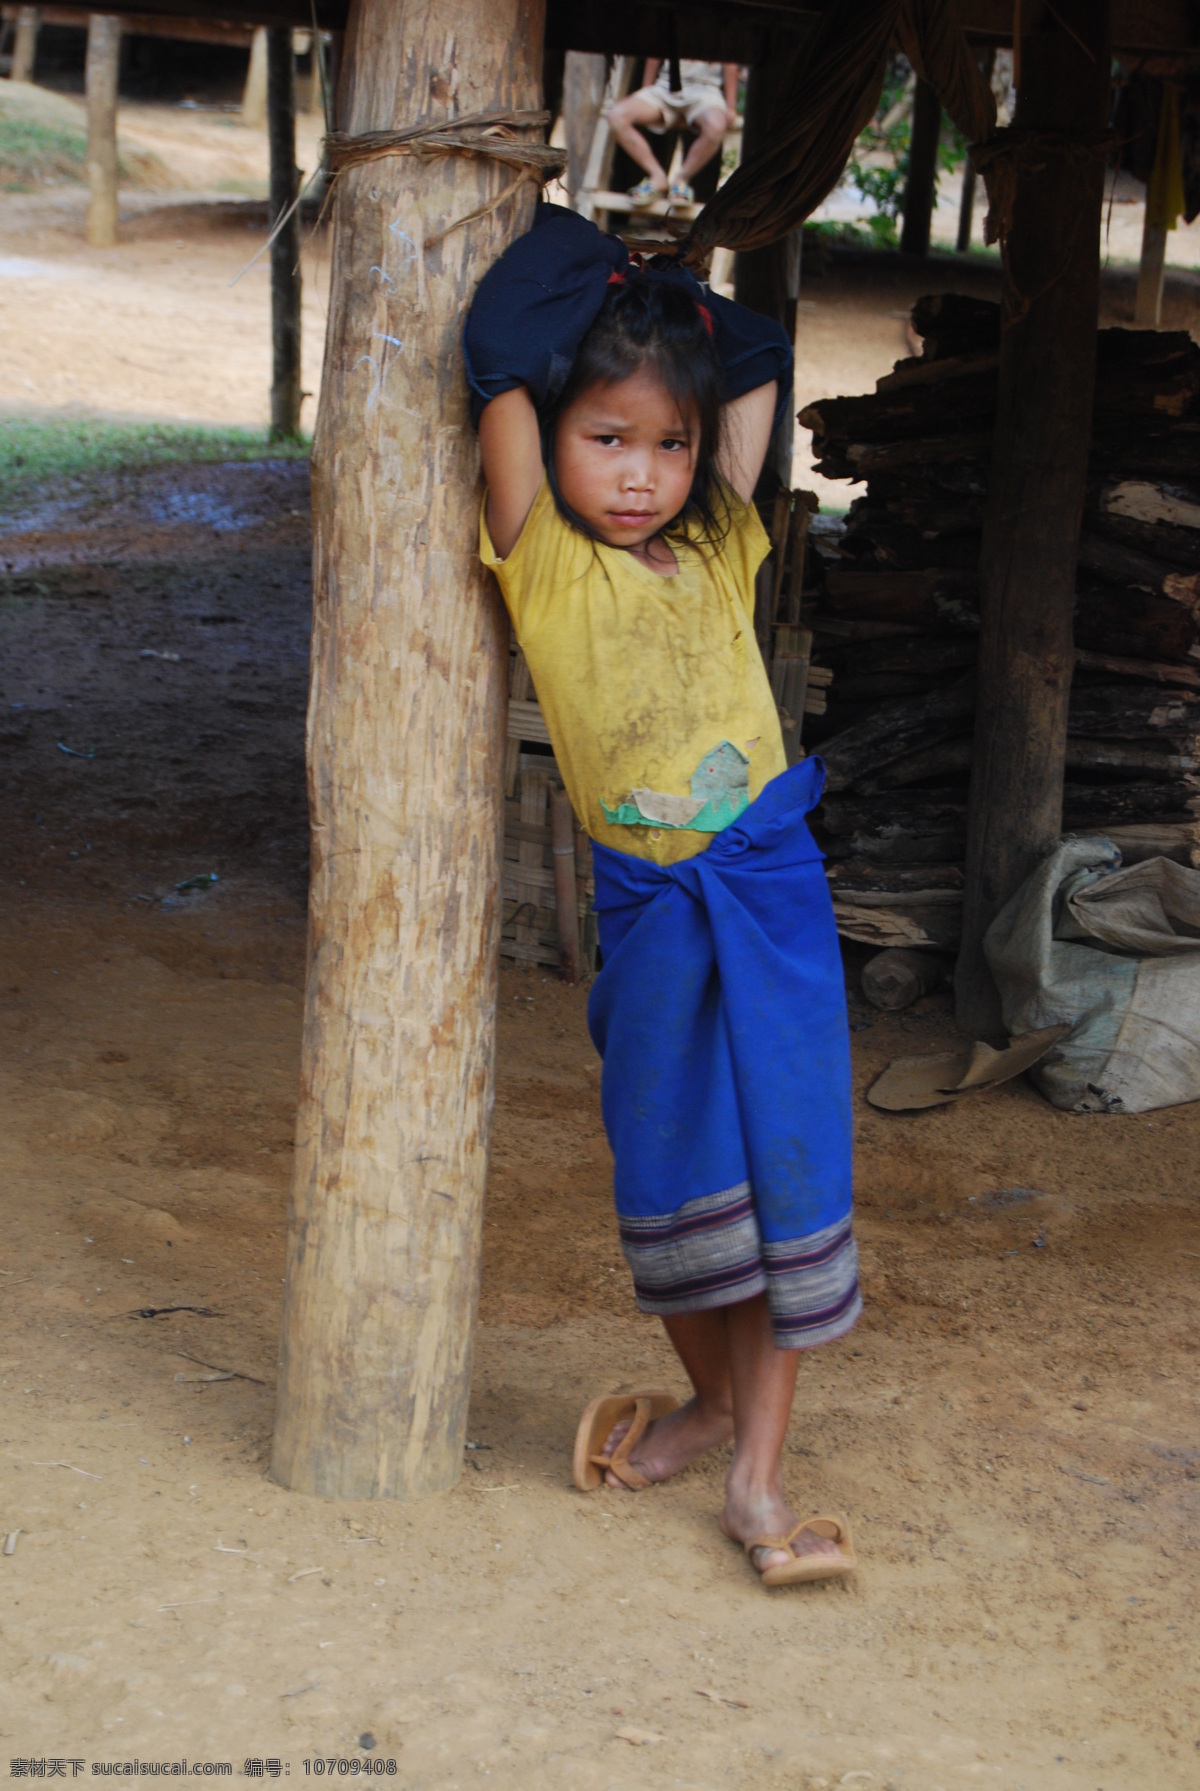 寮国女孩 儿童 小孩 东南亚人 人物图库 儿童幼儿 摄影图库